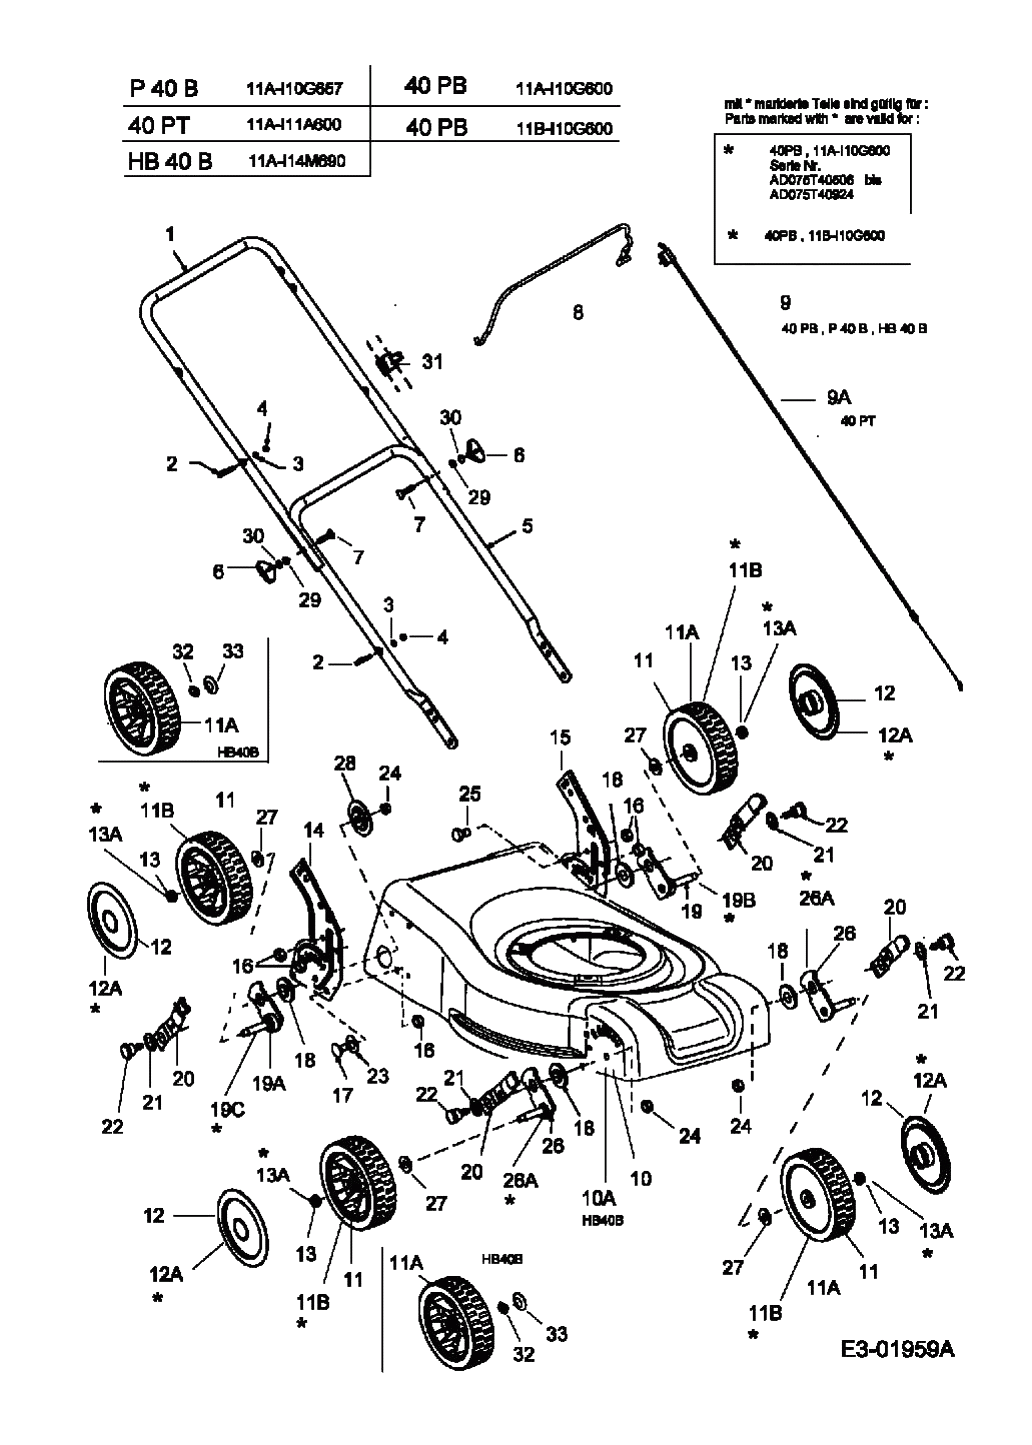 MTD Артикул 11A-I11A600 (год выпуска 2005). Ручка, колеса, регулятор высоты реза